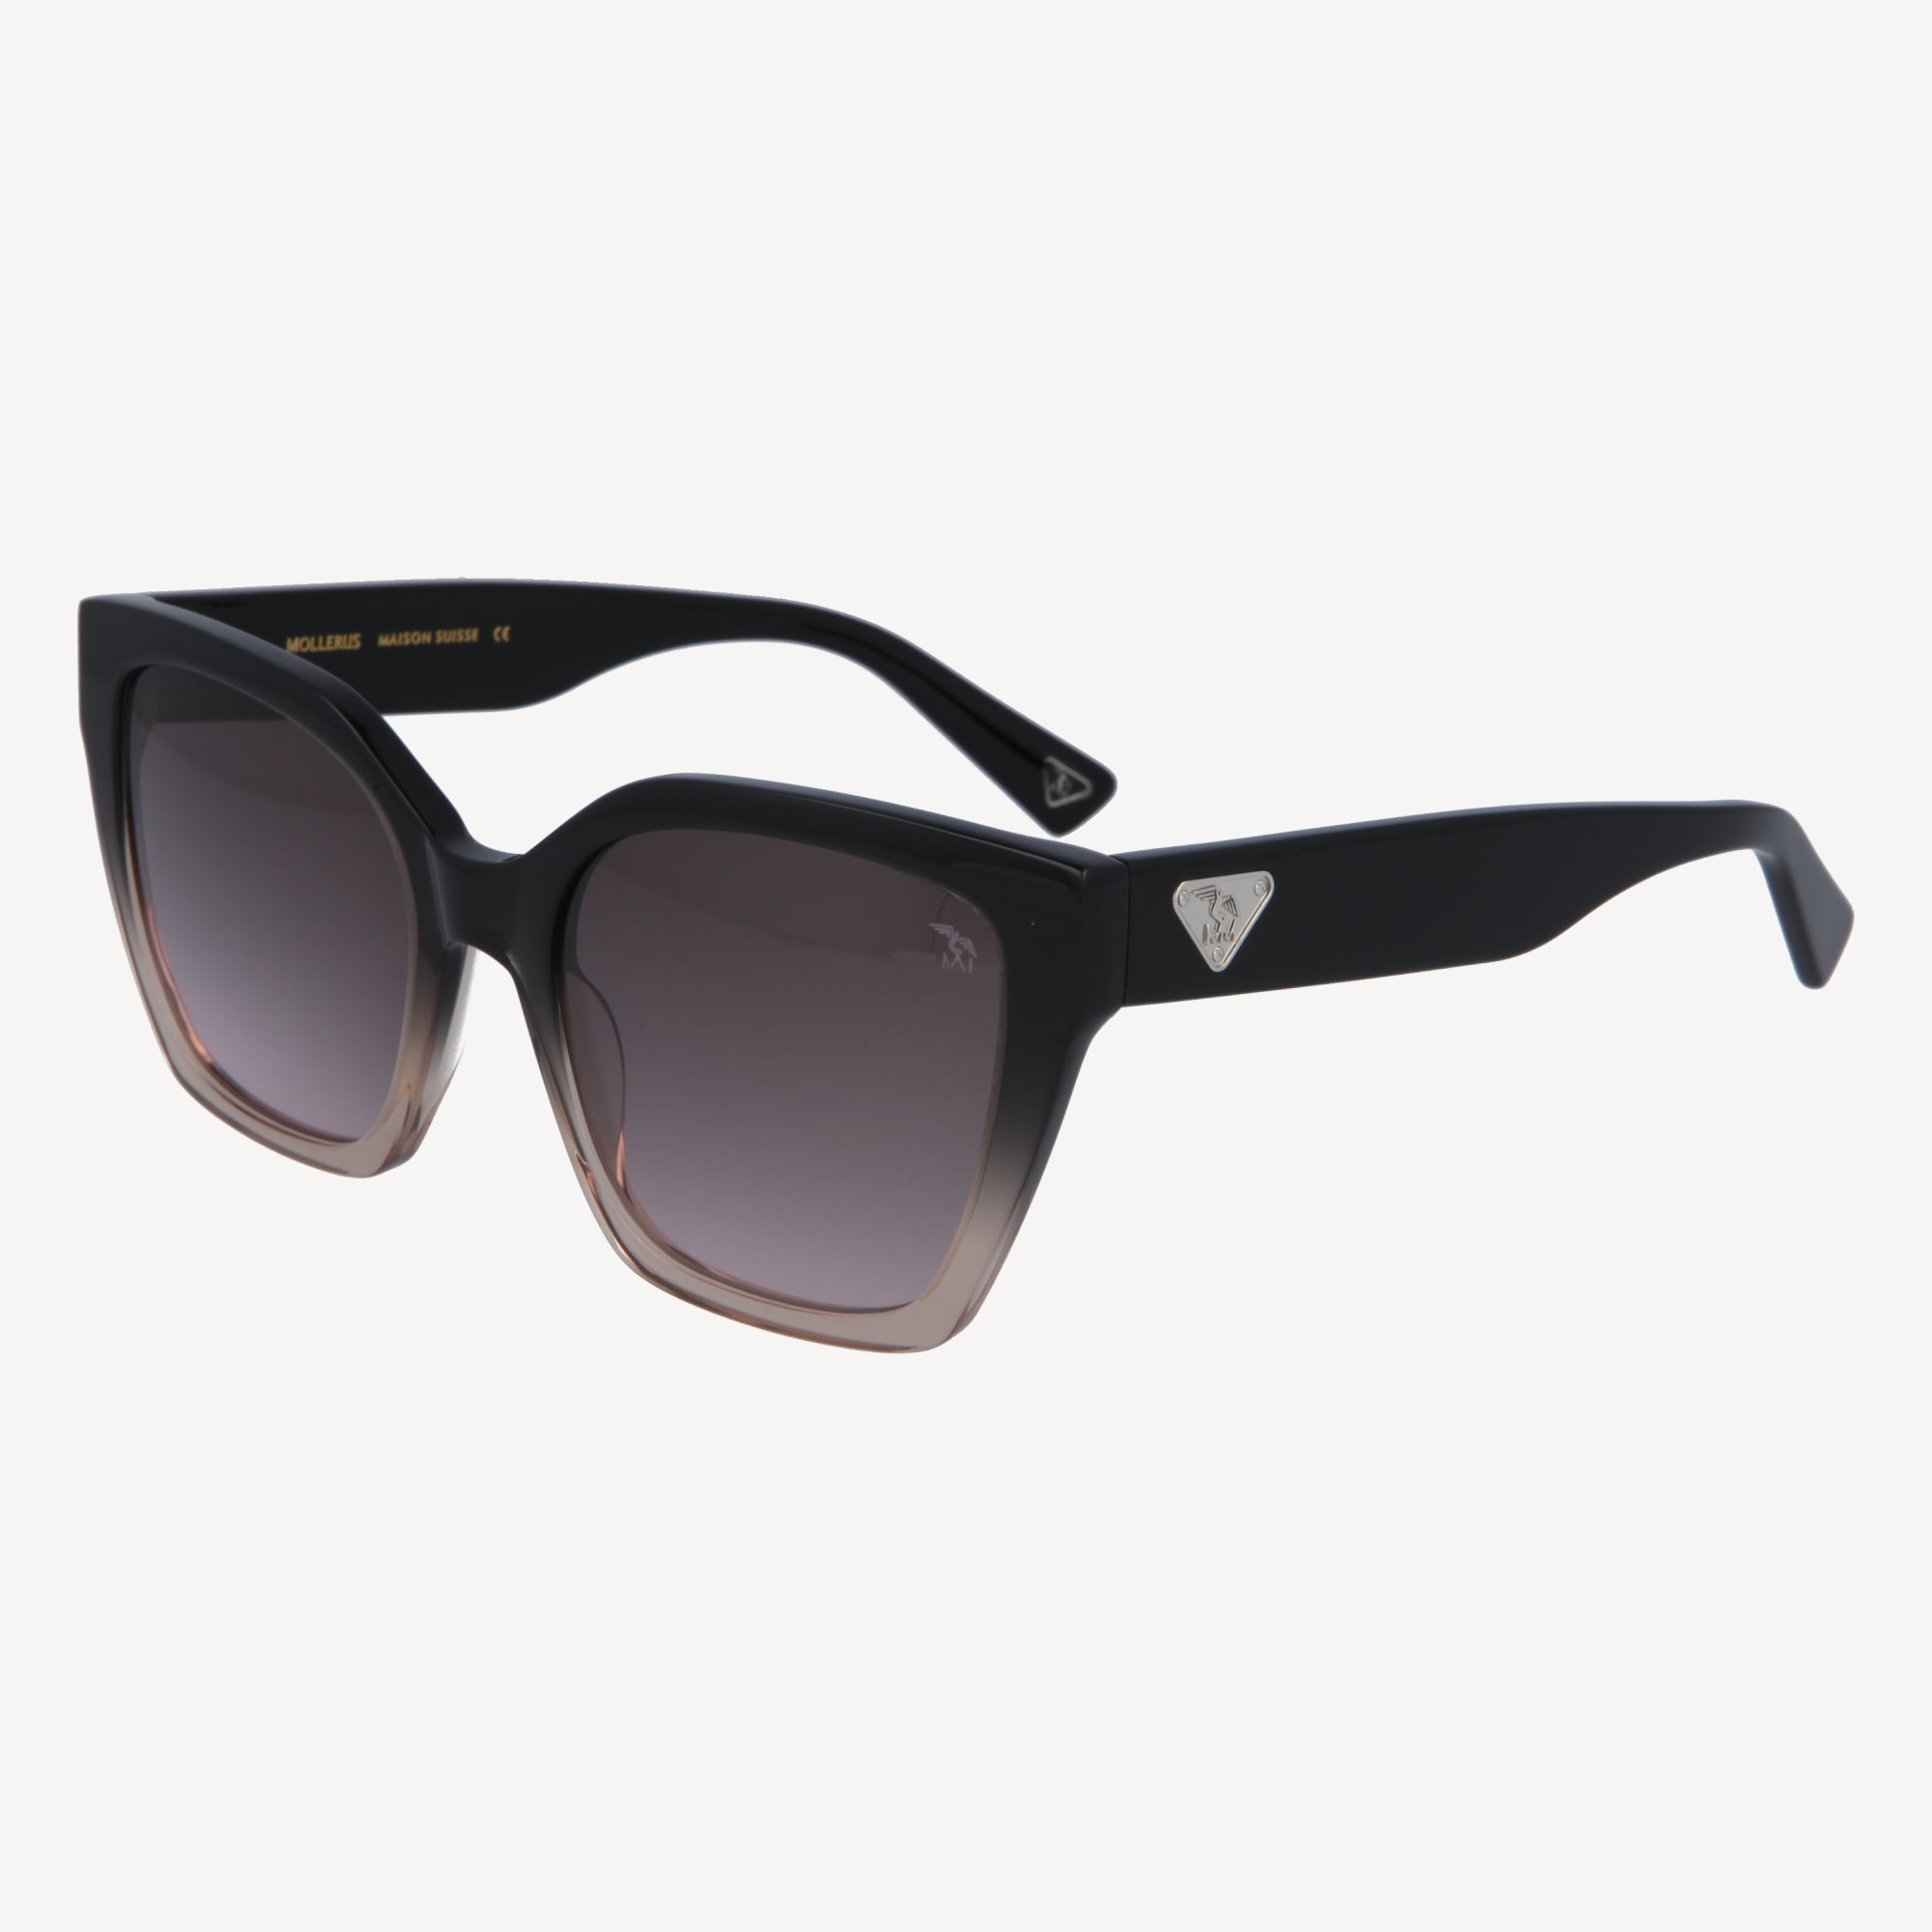 MONTE BAR | Sonnenbrille schwarz beige/silberMONTE BAR | Sonnenbrille schwarz beige/silber - FRONTAL